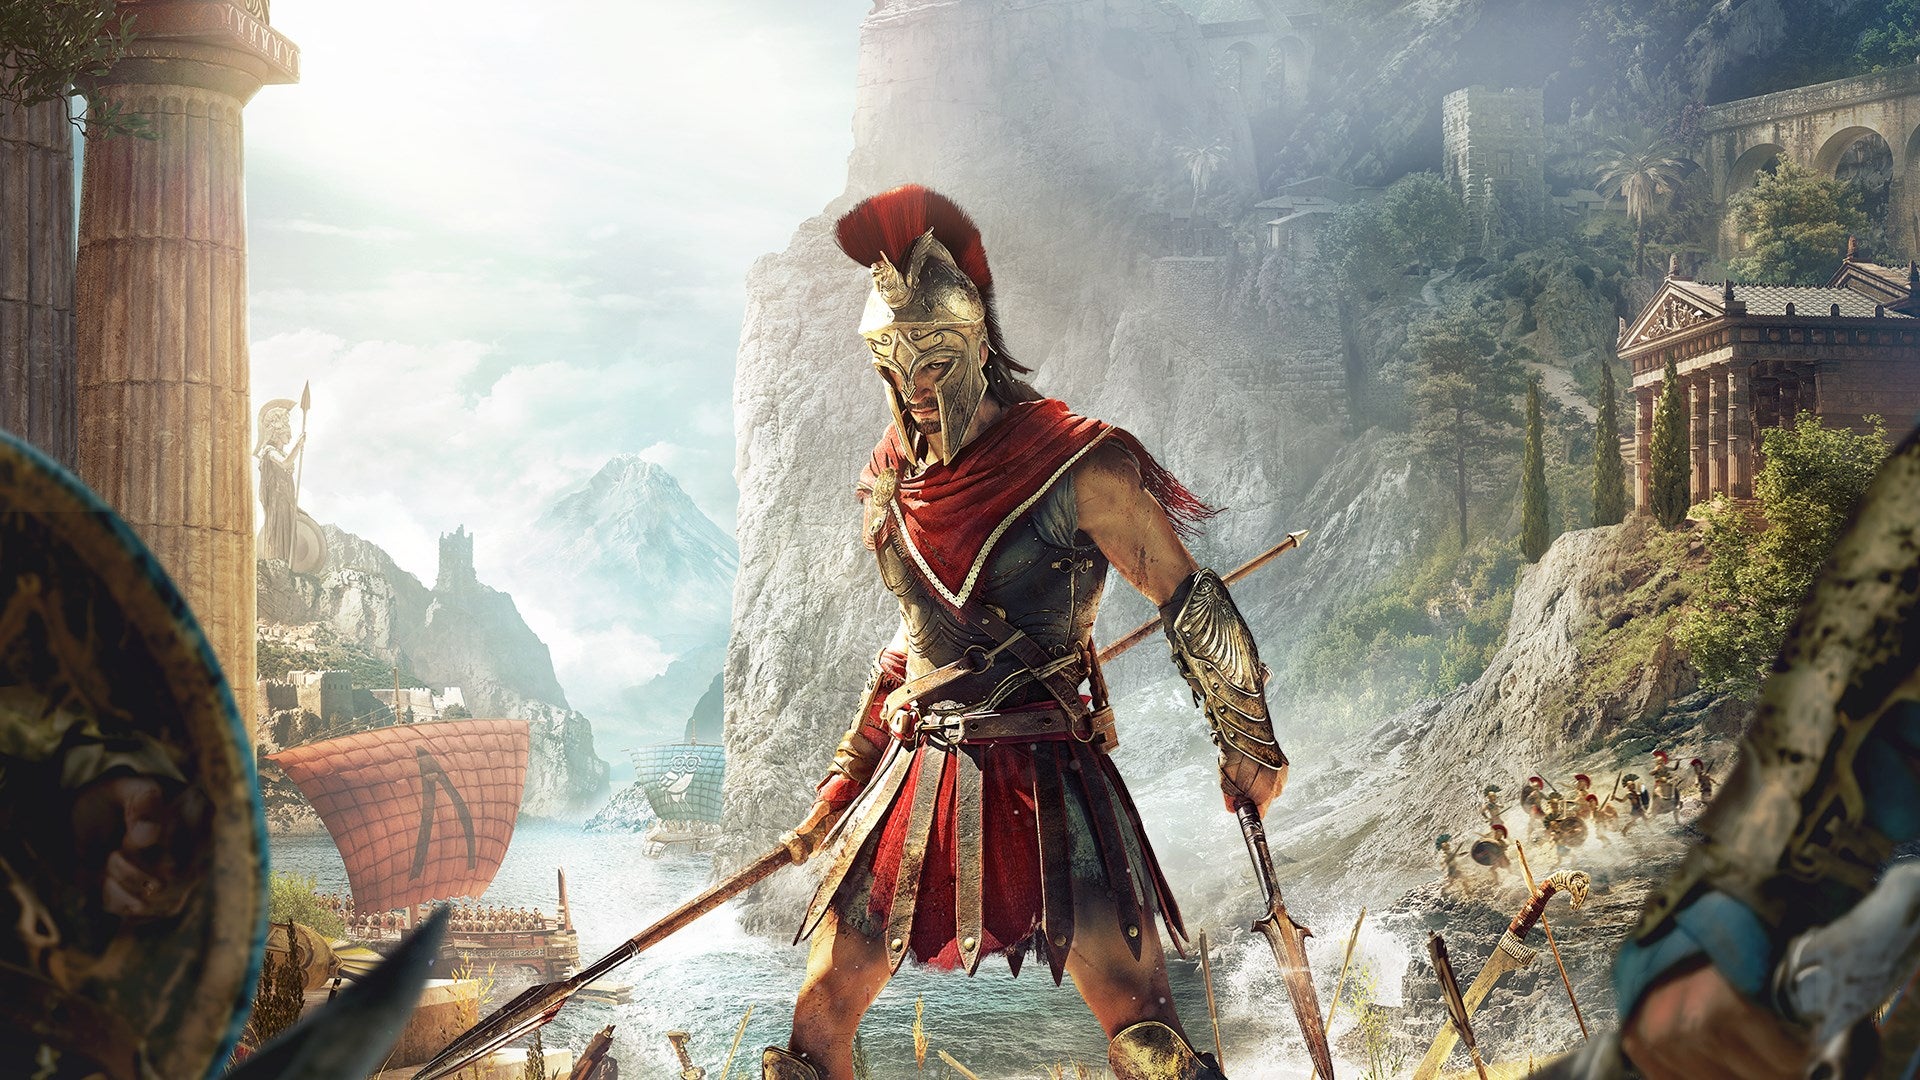 Bilder zu Bis zu 75 Prozent Rabatt im neuen Ubisoft Forward Sale auf Assassin's Creed, Watch Dogs und Co.